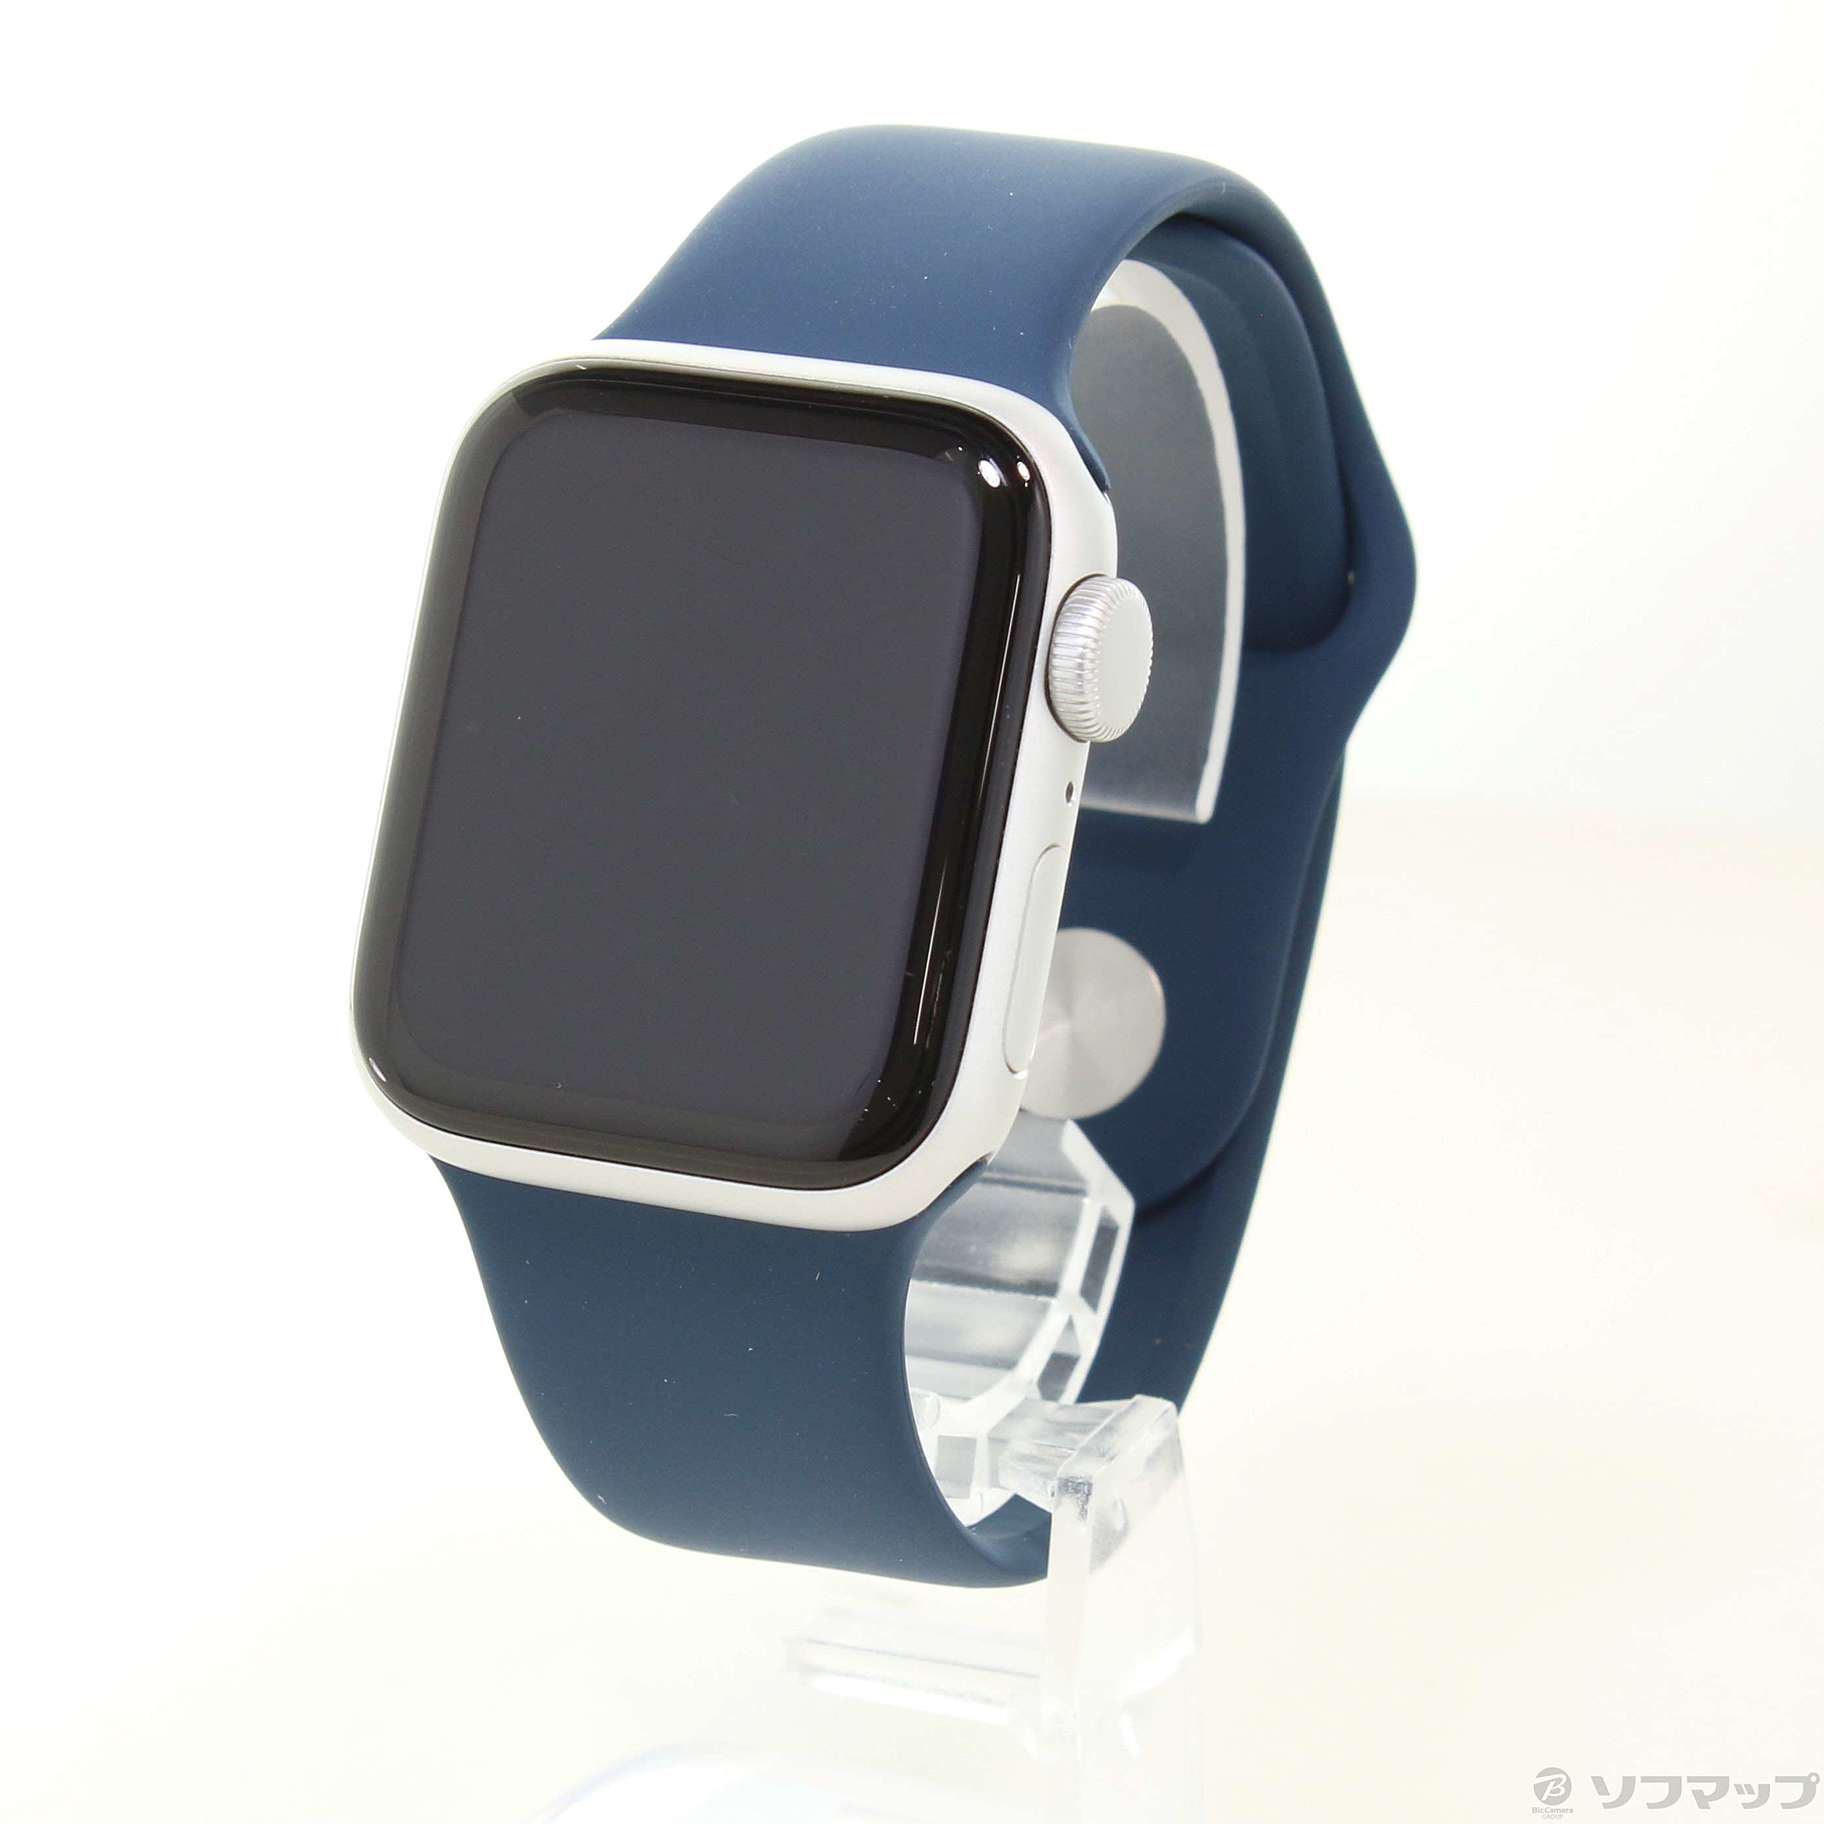 Apple Watch SE (GPSモデル) - 40mm-